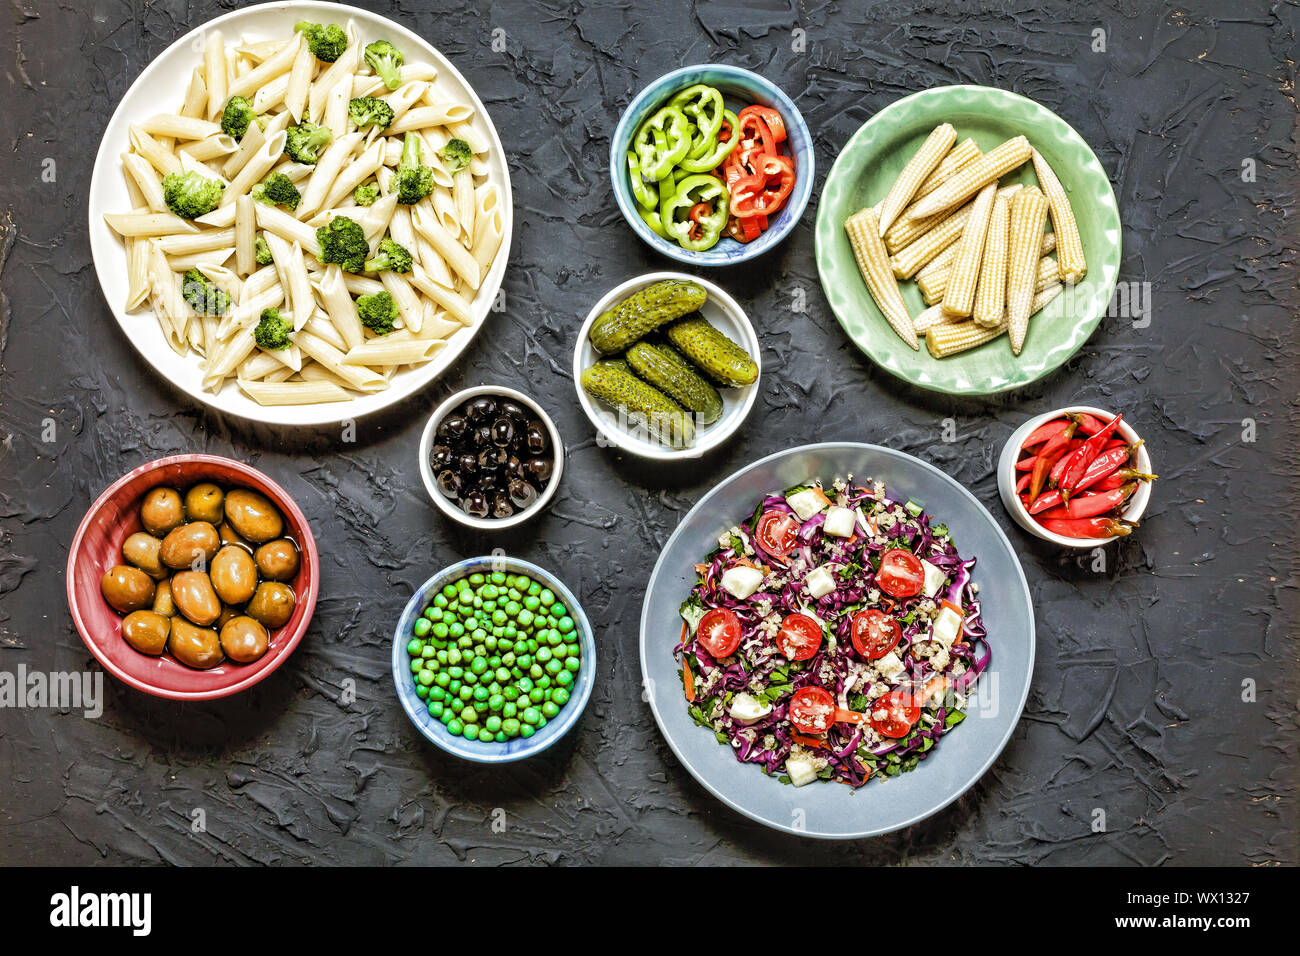 Detox, comida vegetariana, brócoli, de Manicotti, pasta penne pasta, ensalada de quinua, aceitunas, Foto de stock